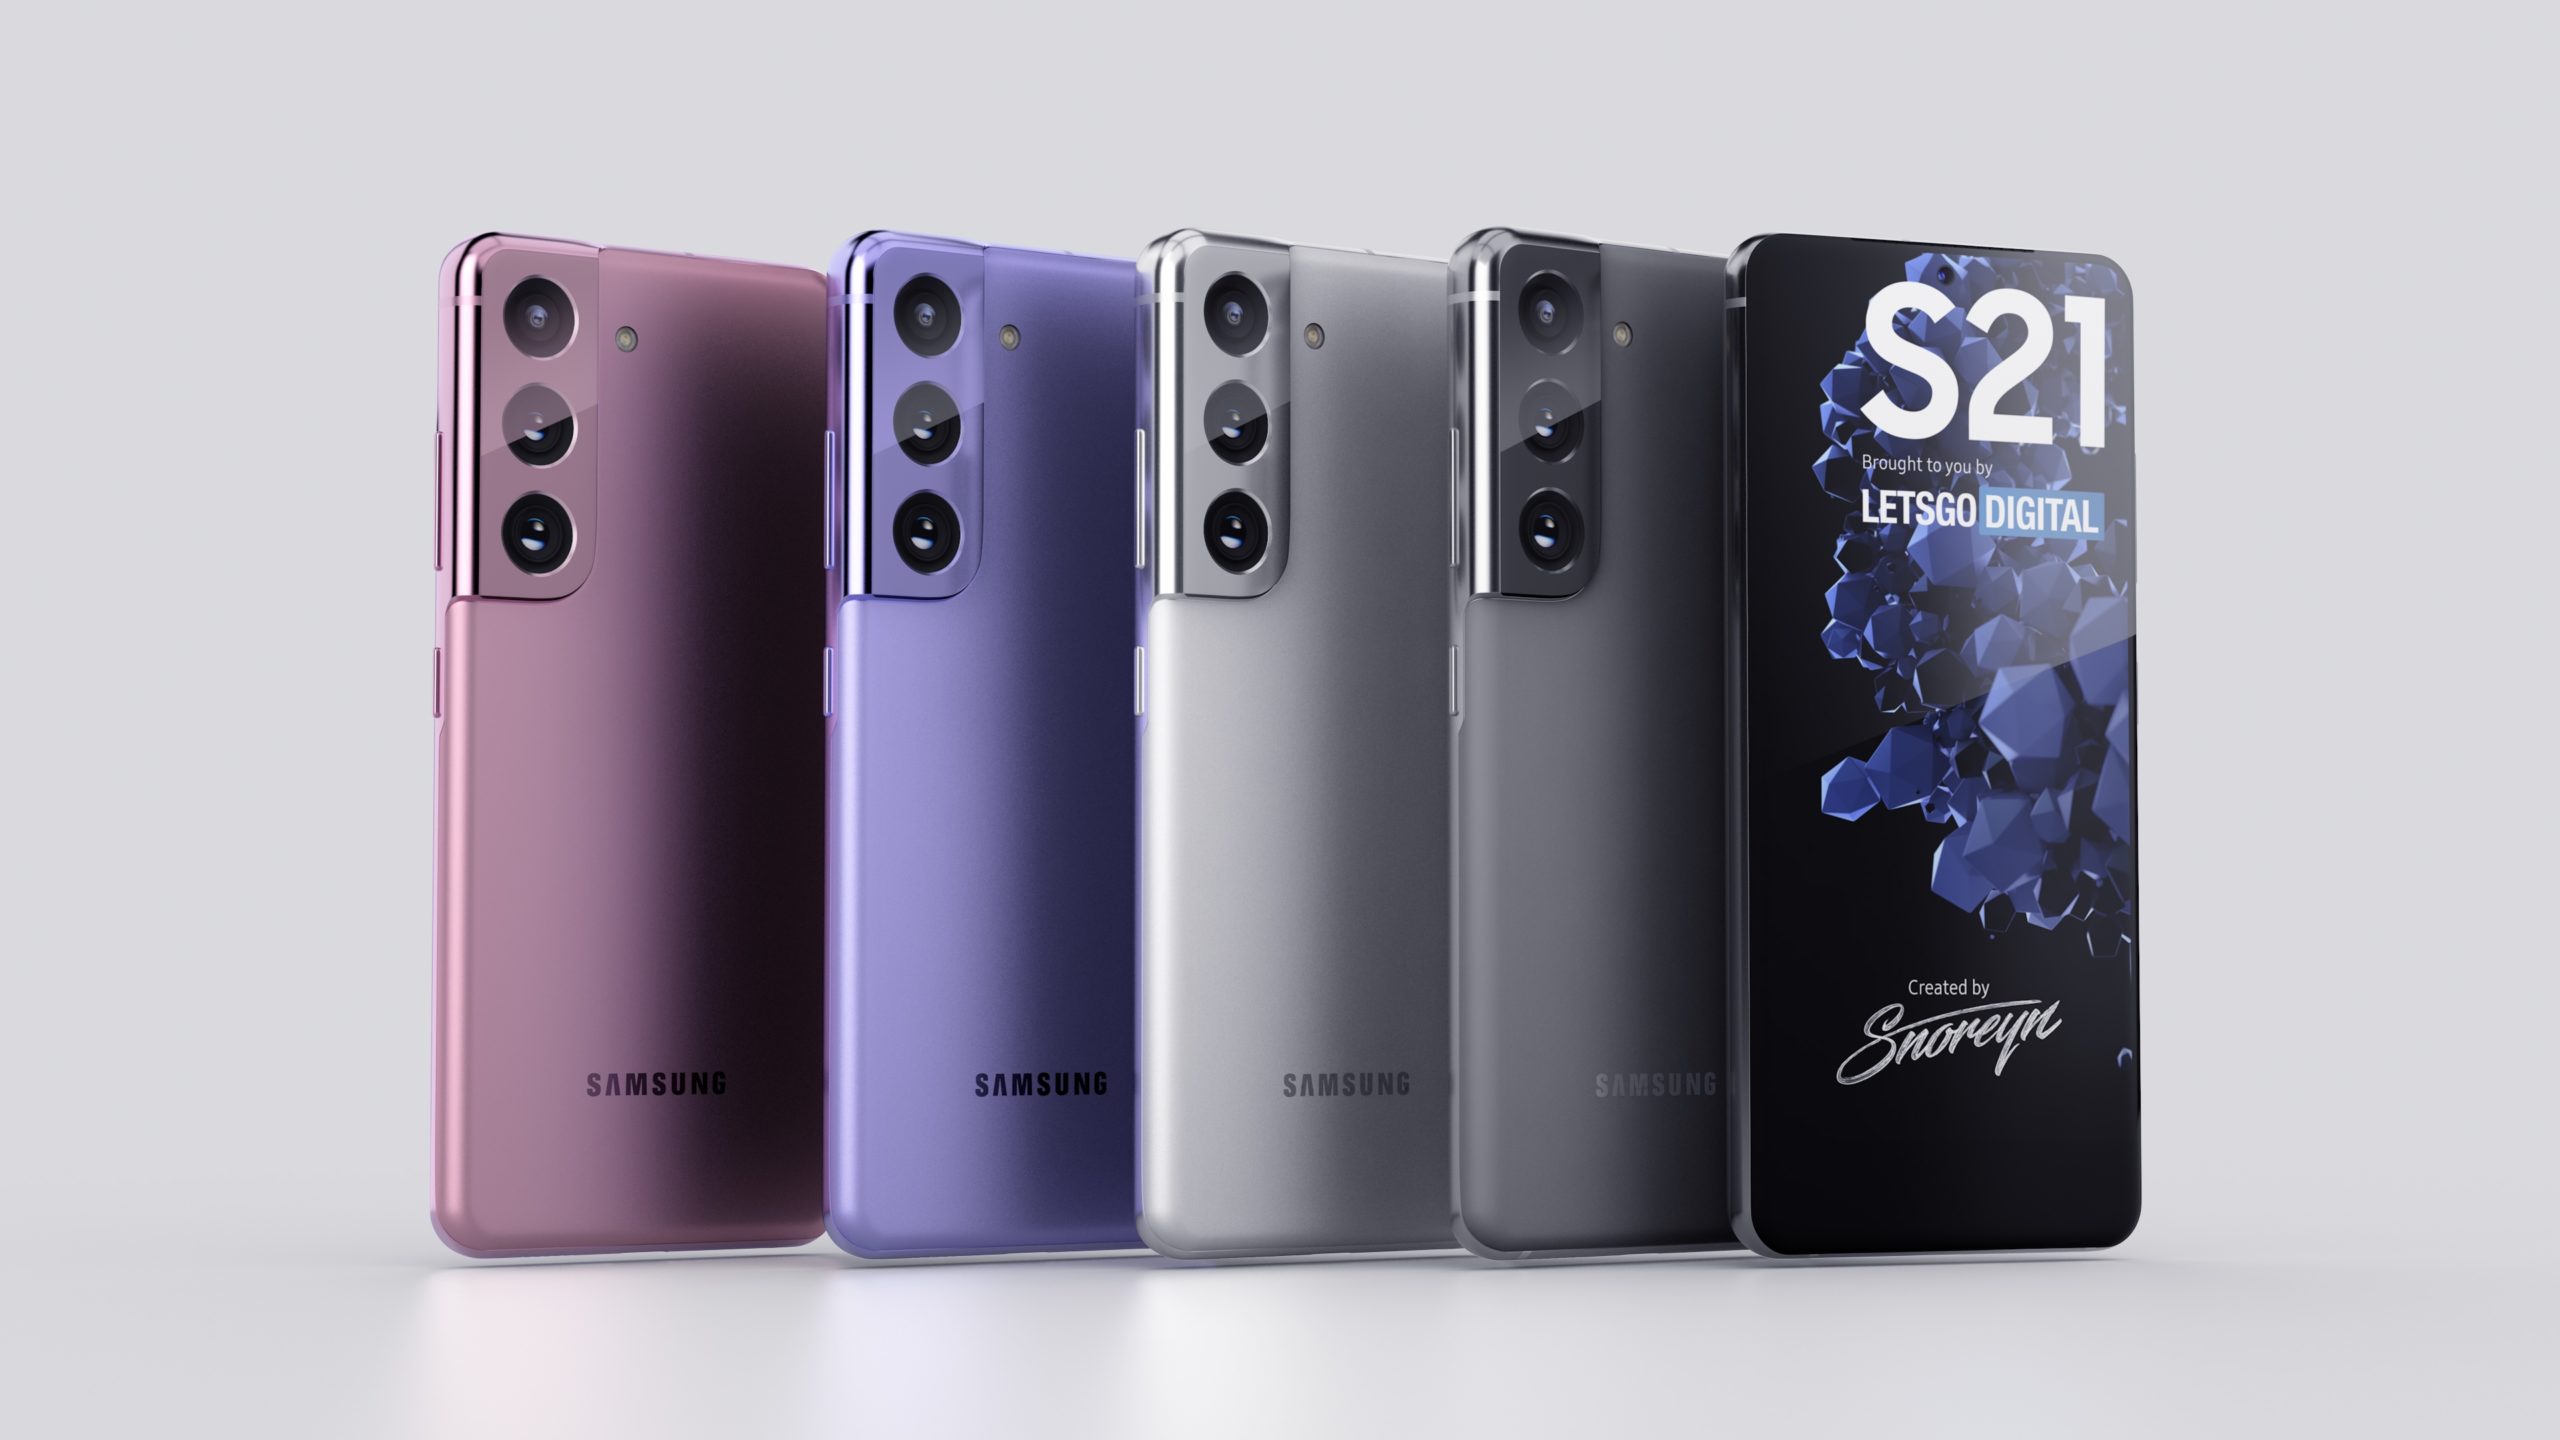 Melhores celulares Samsung